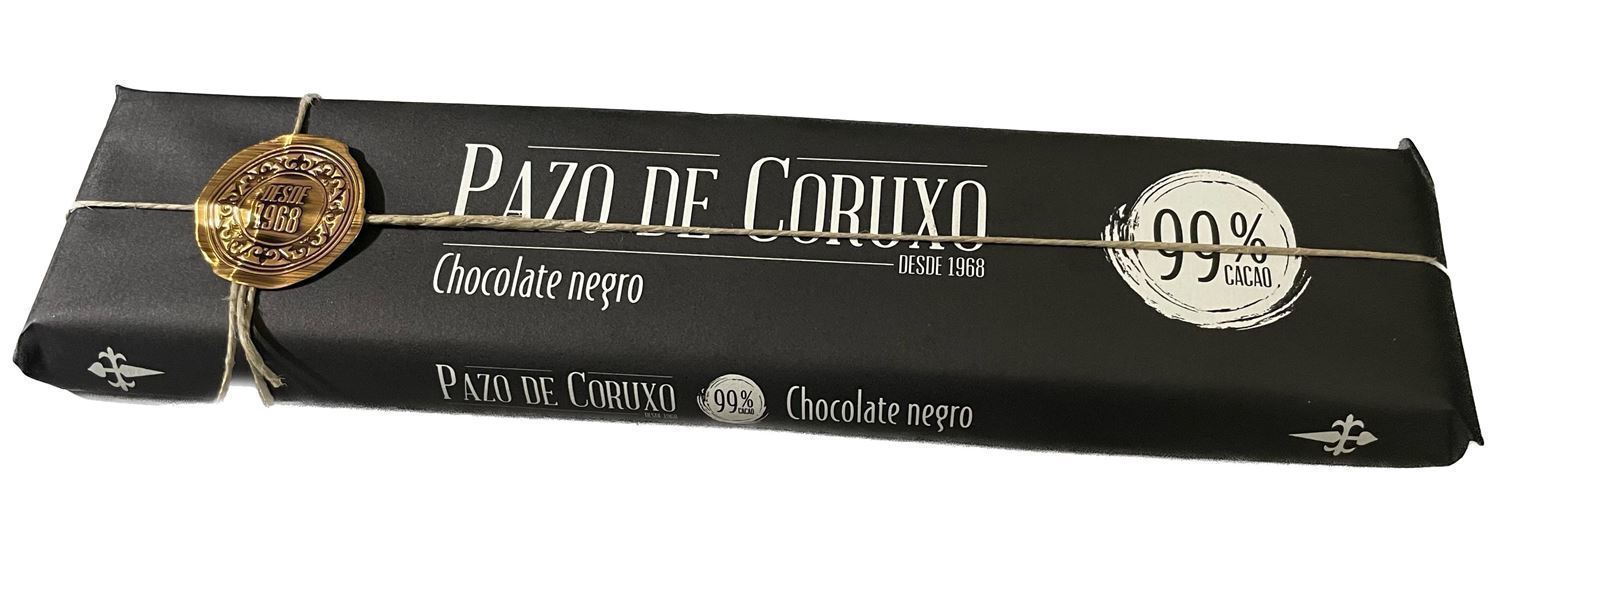 TABLETA CHOCOLATE 99% PAZO DE CORUXO 300grs - Imagen 1